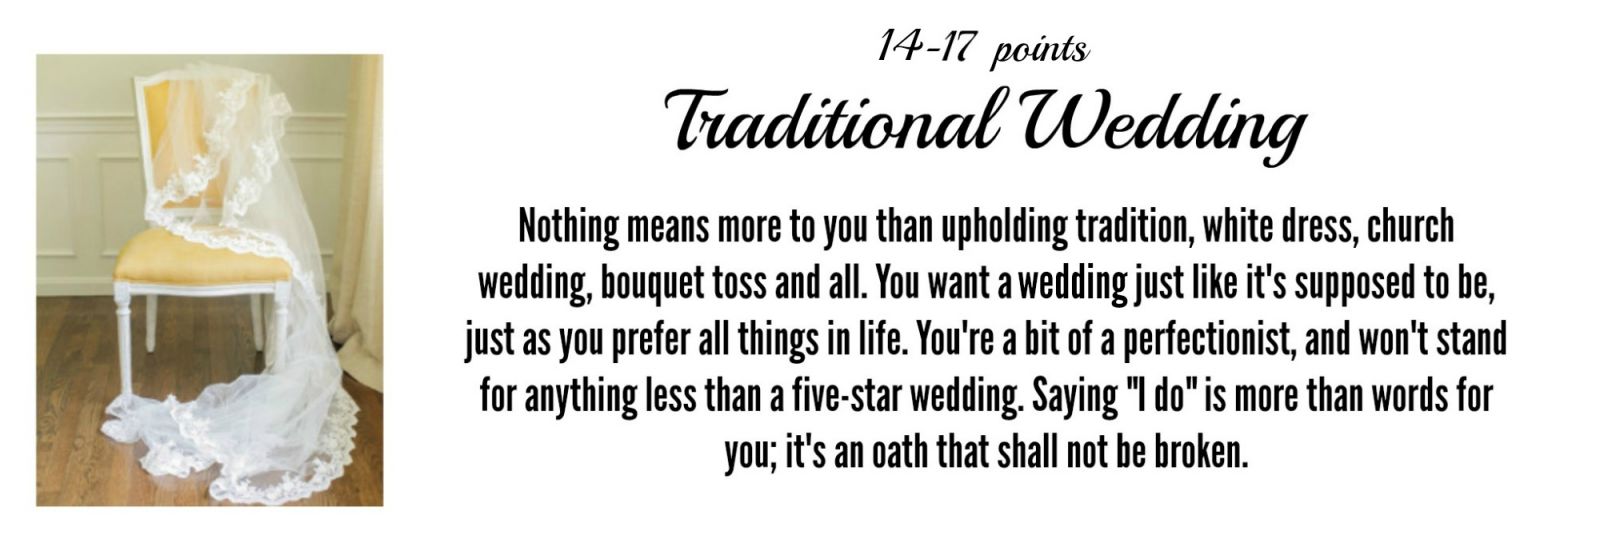 Traditional Wedding Ideas